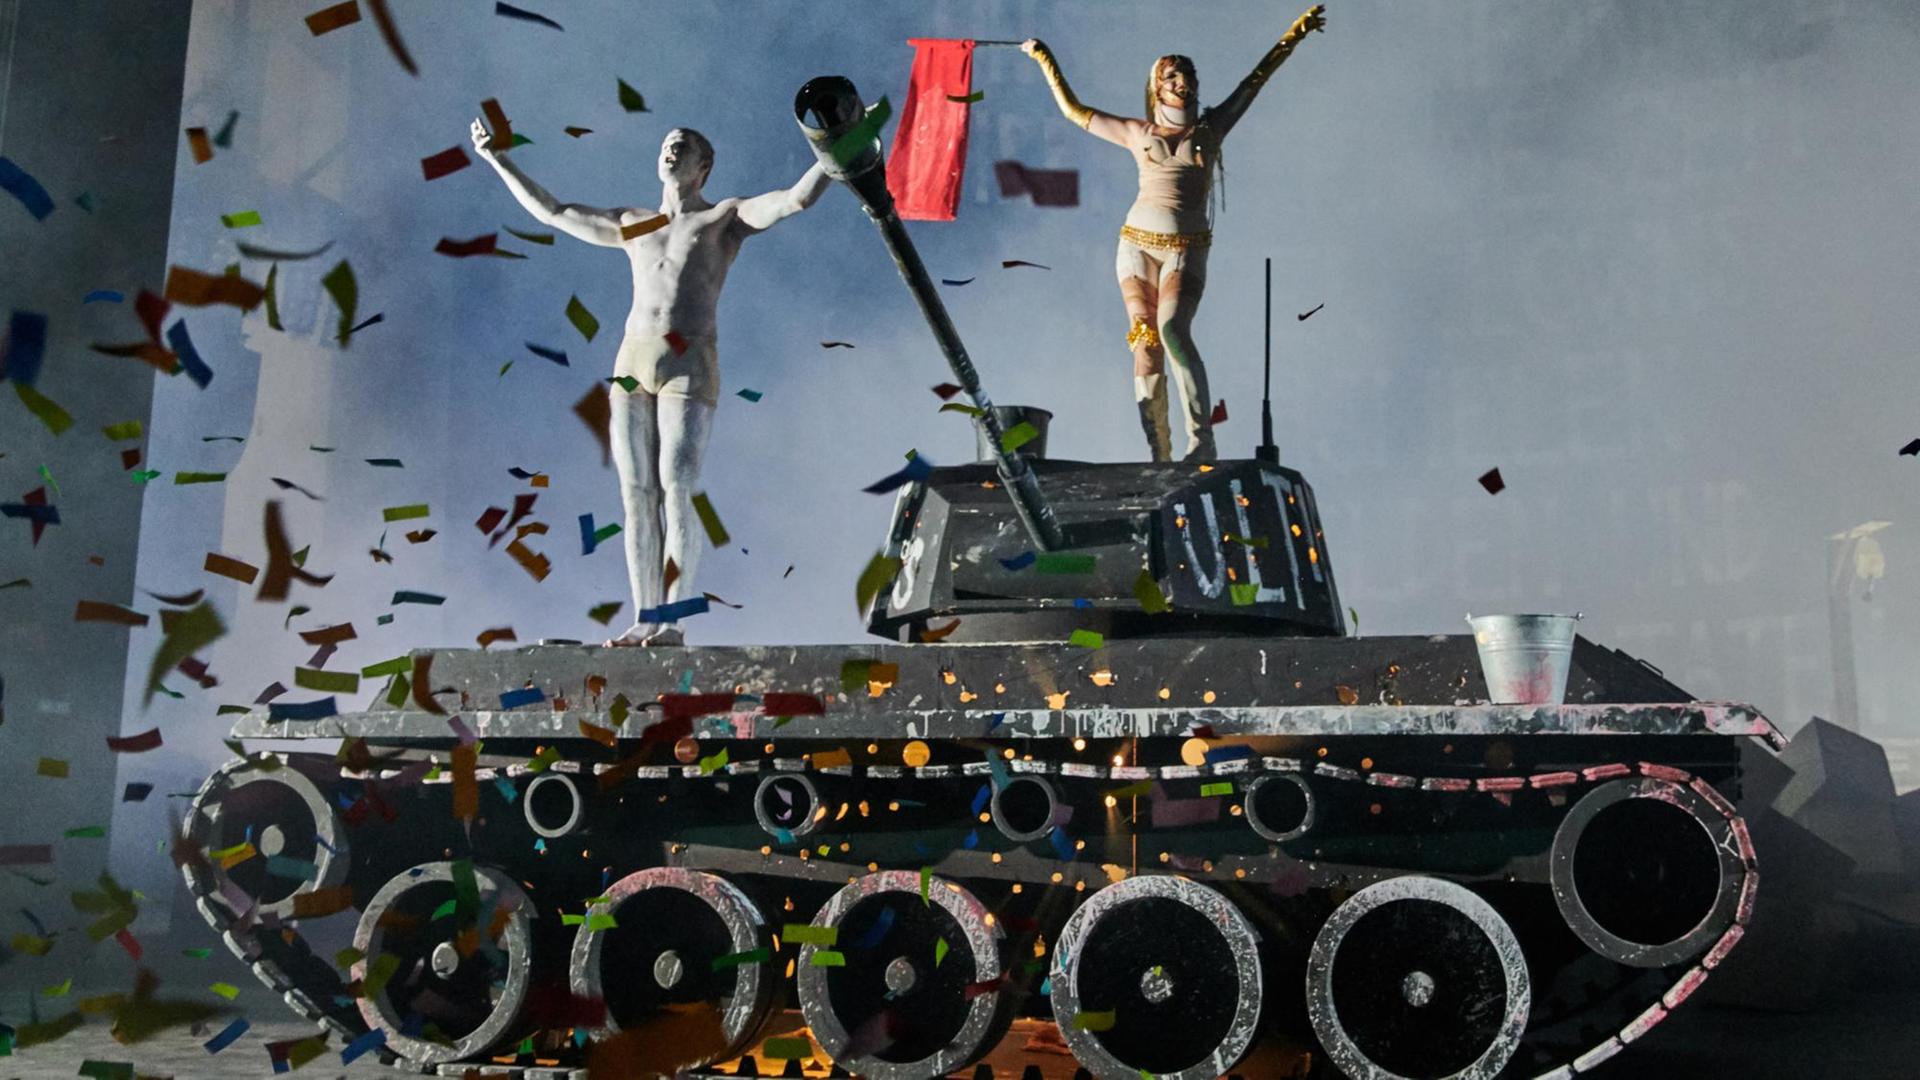 Die Schauspieler Theo Trebs und Jella Haase tanzen auf einem Panzer im Stück "Eine Odyssee“ an der Berliner Volksbühne